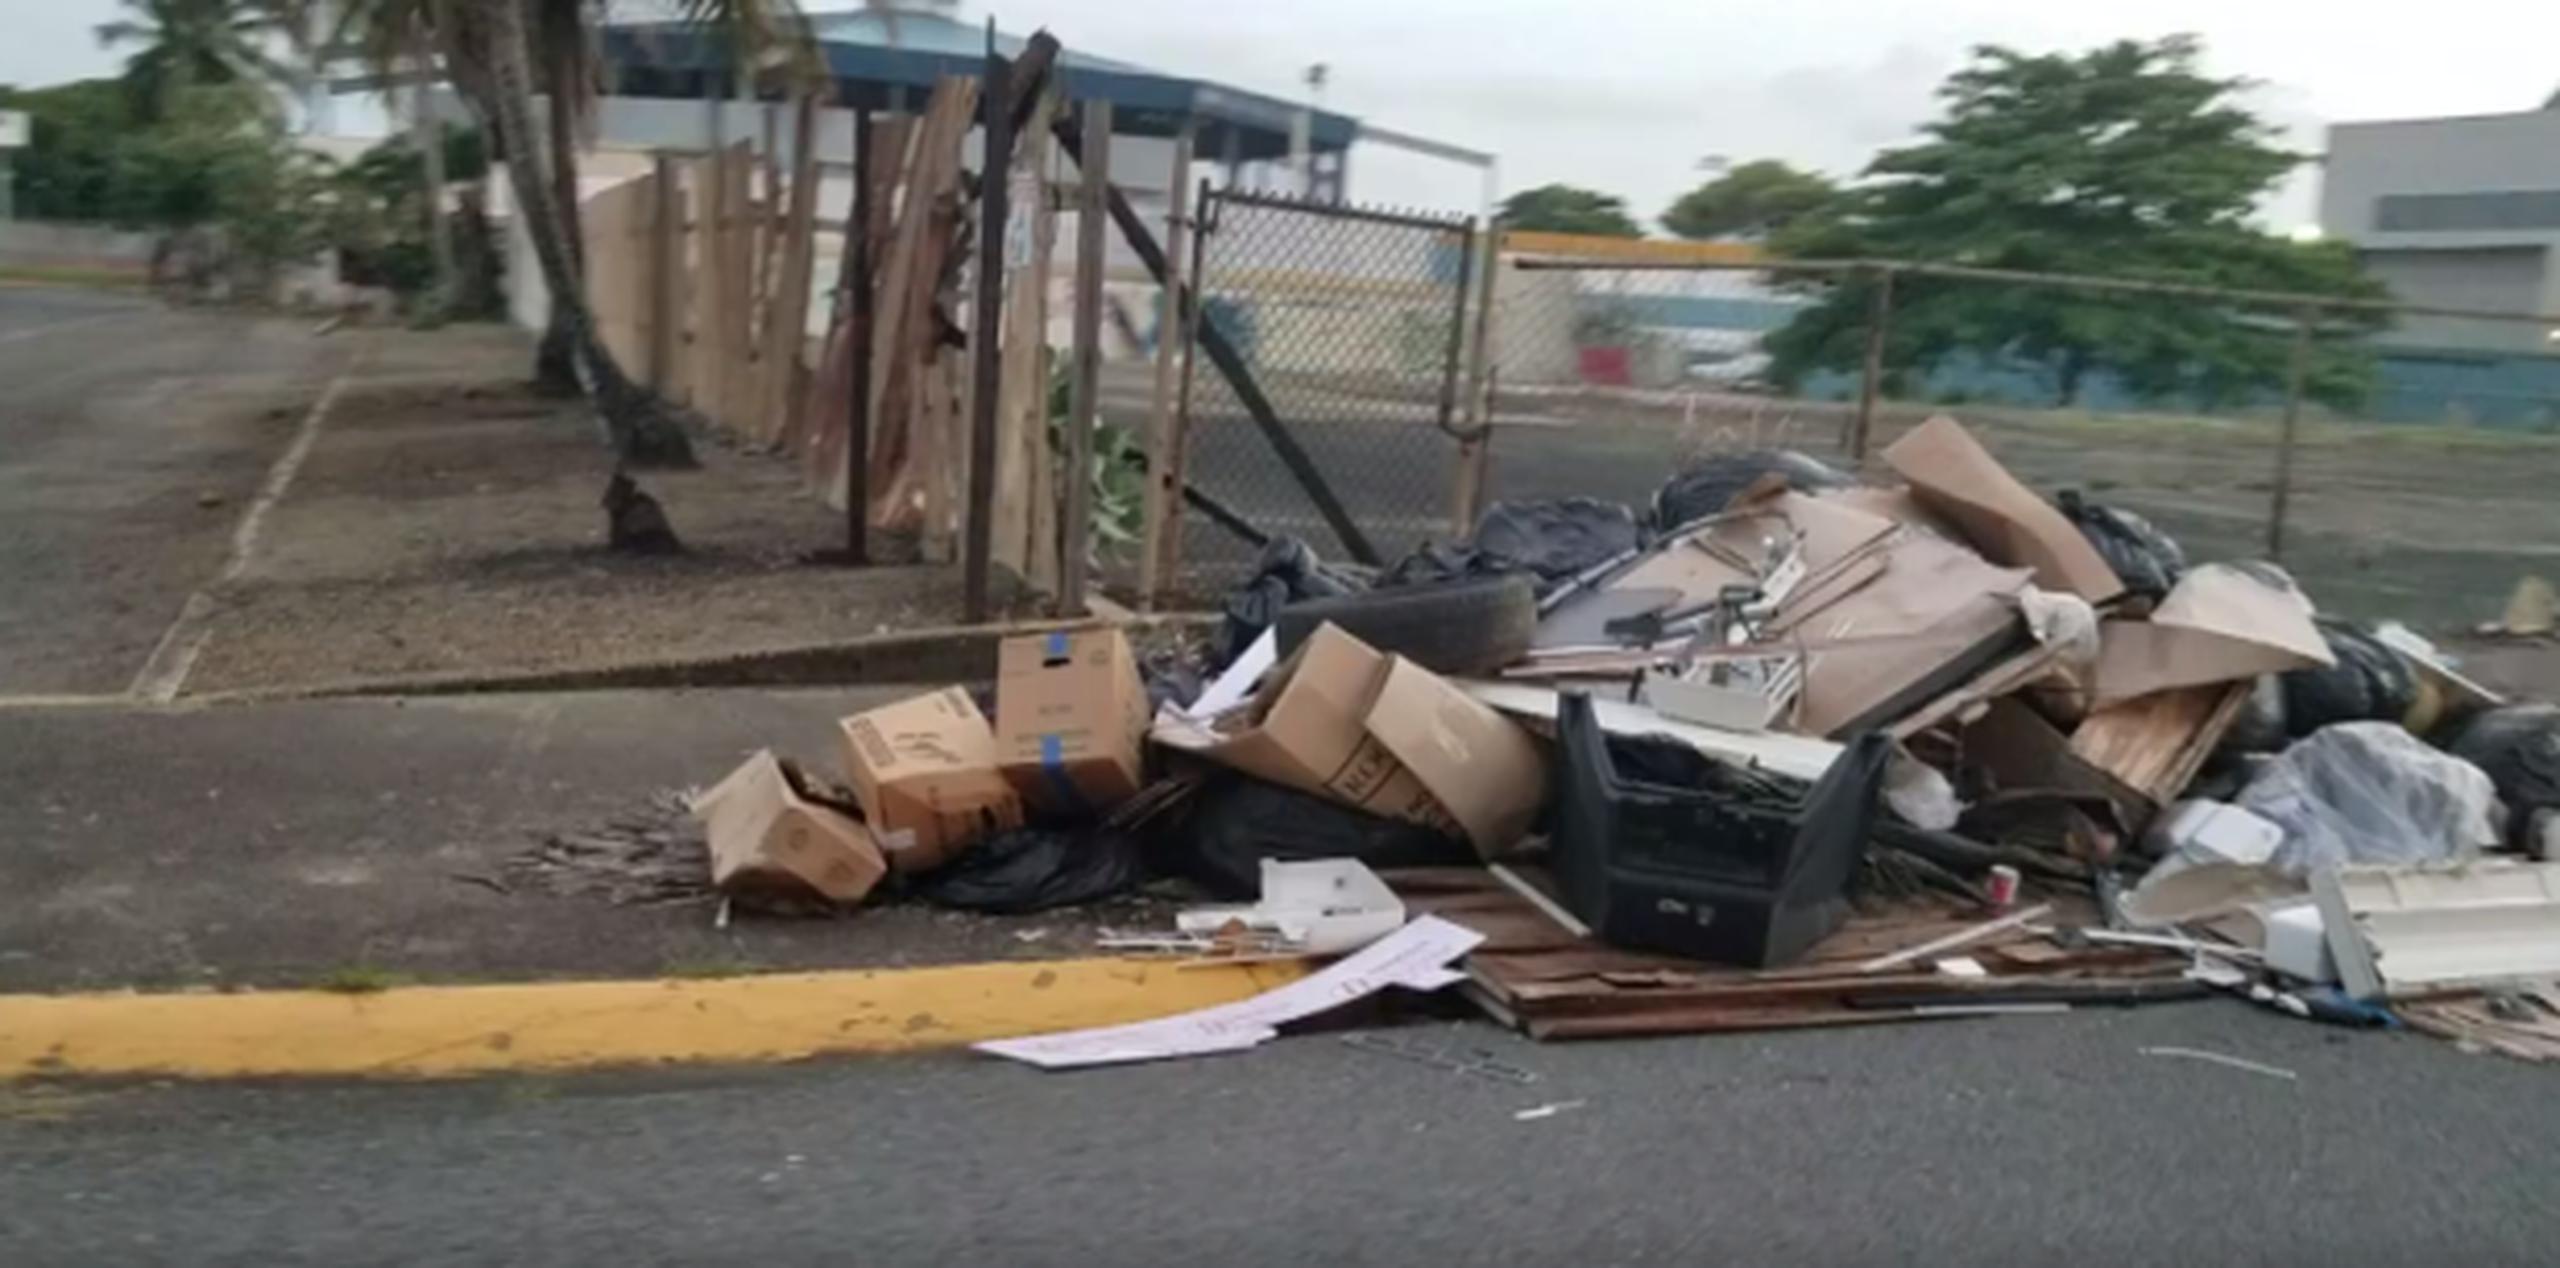 El alcalde “Betito” Márquez dijo que para poder recoger la basura en su municipio, con 80,000 habitantes, necesita 10 camiones. (Facebook / Angel M. Pineiro-Planas)